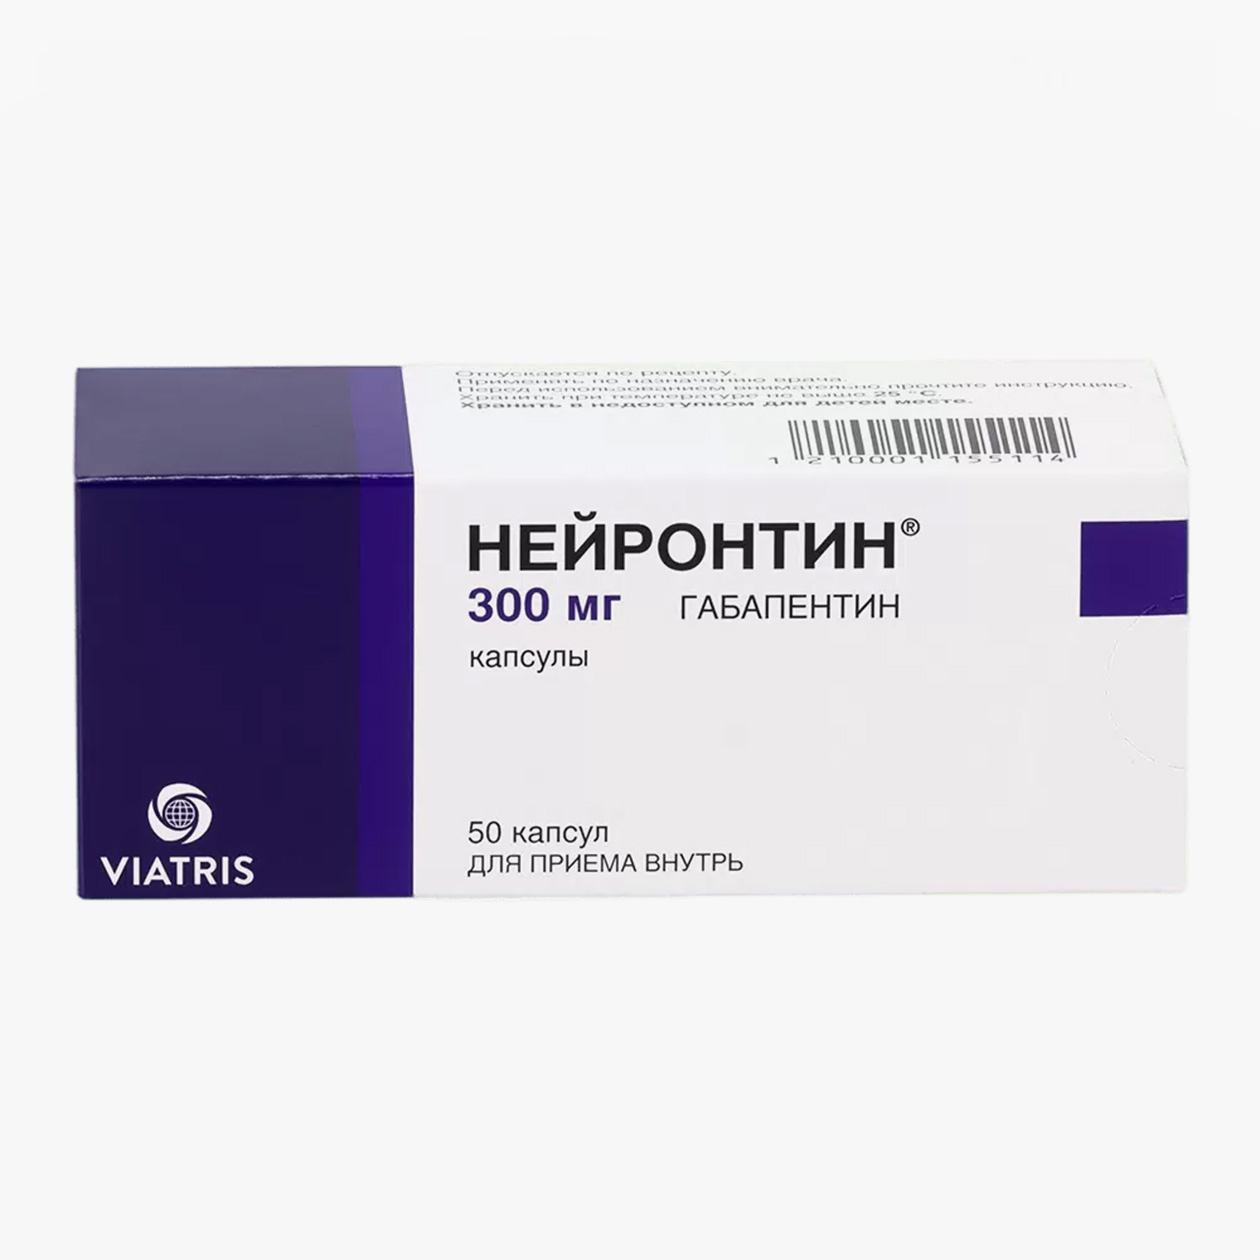 Таблетки с габапентином, цена за 50 таблеток в дозировке 300 мг начинается от 1300 ₽. Это оригинальный препарат. Источник: eapteka.ru